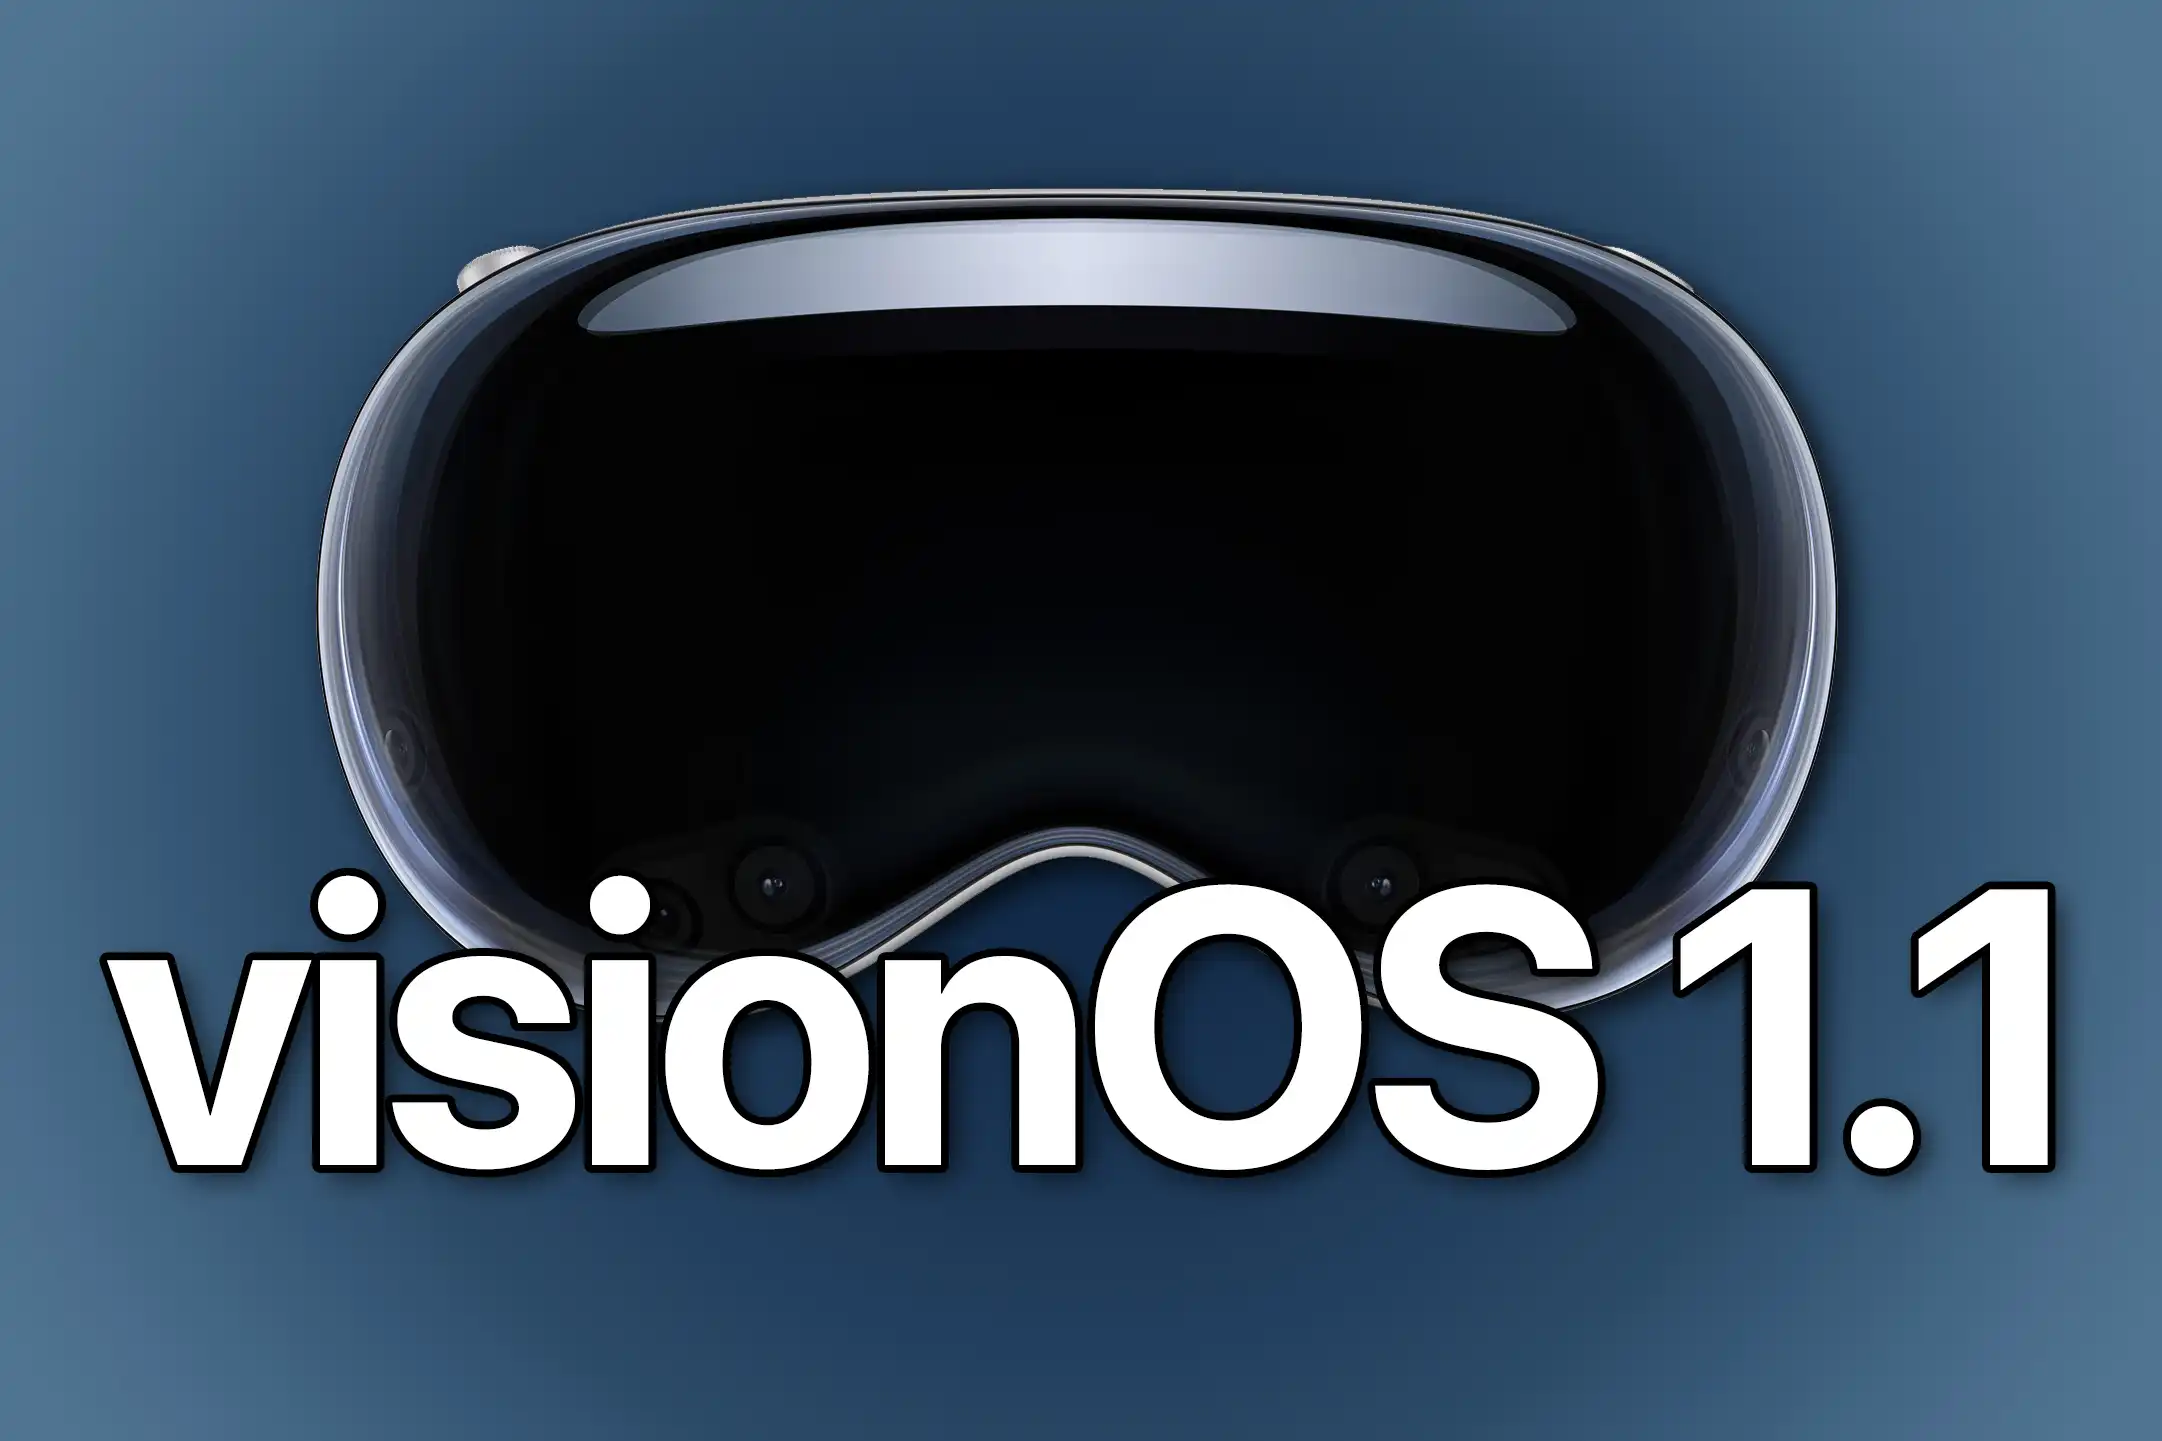 Apple Unveils visionOS 1.1